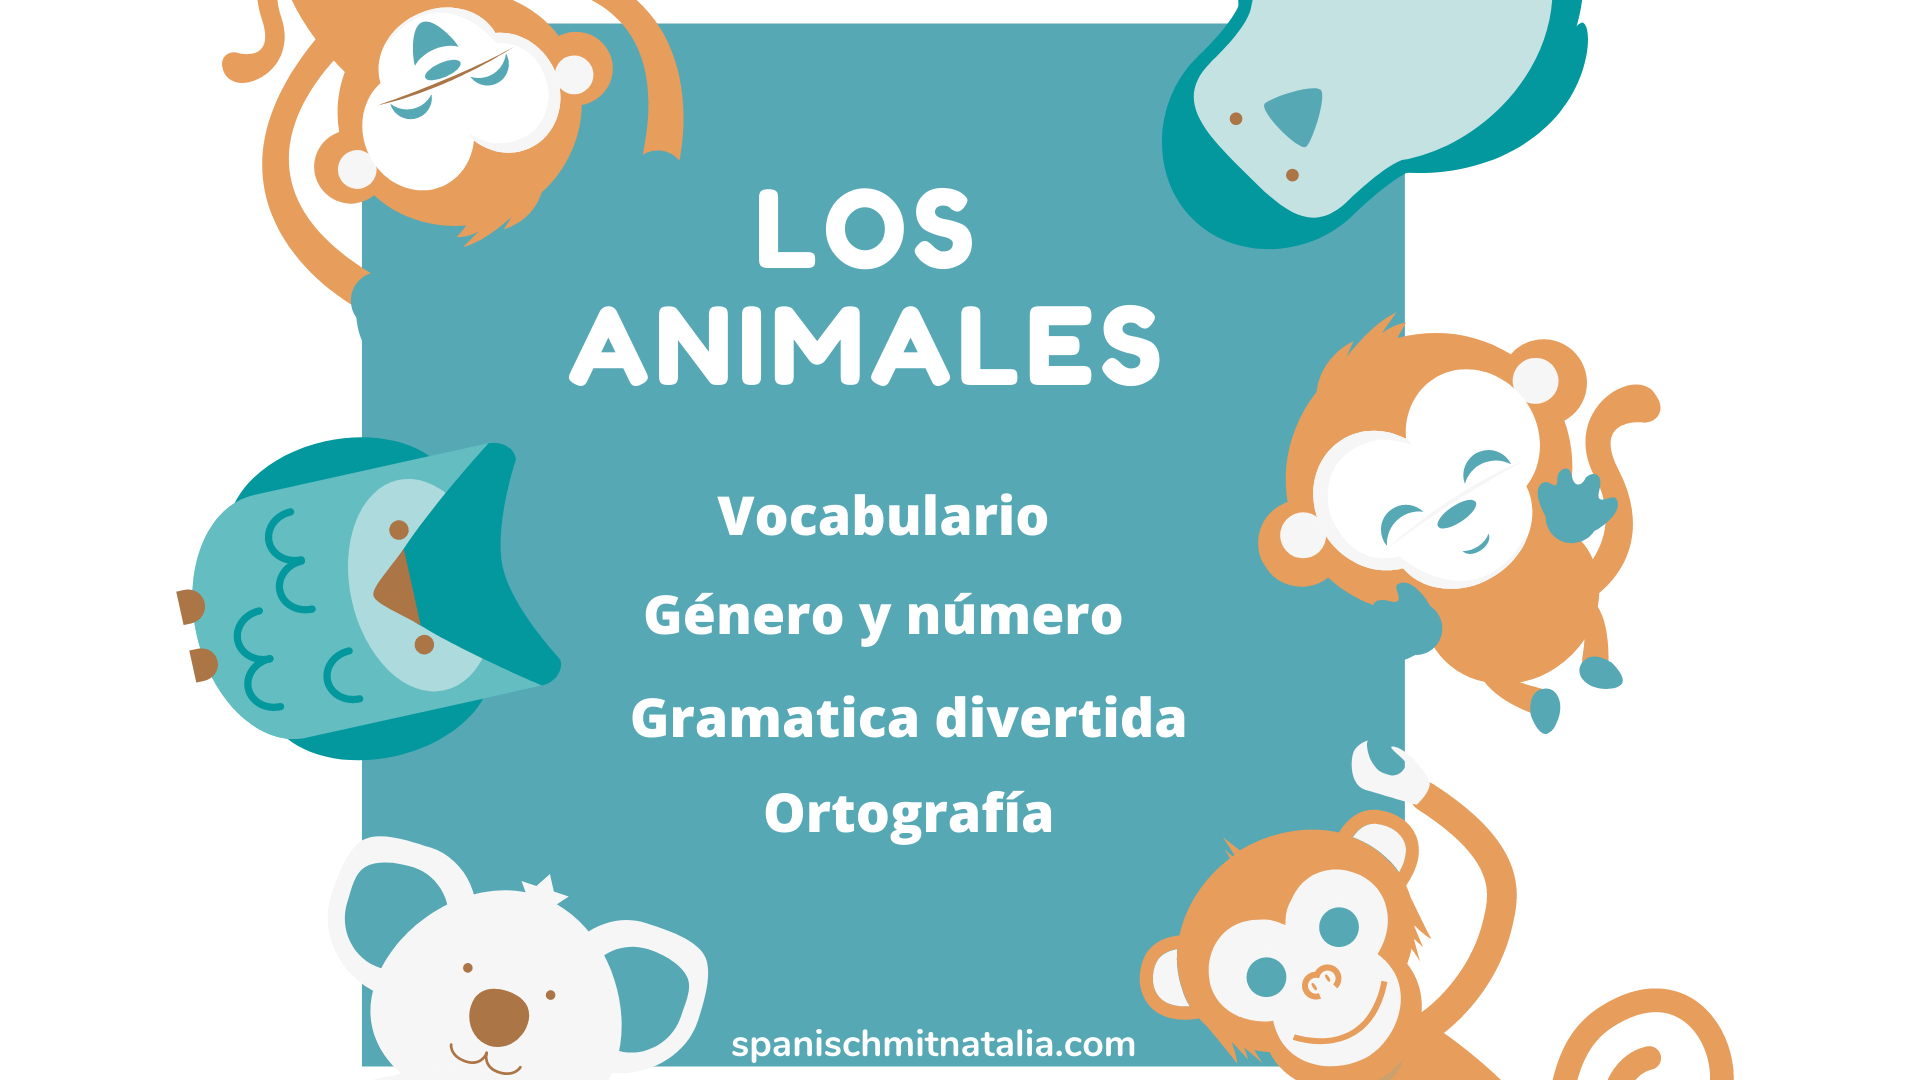  los animales en español